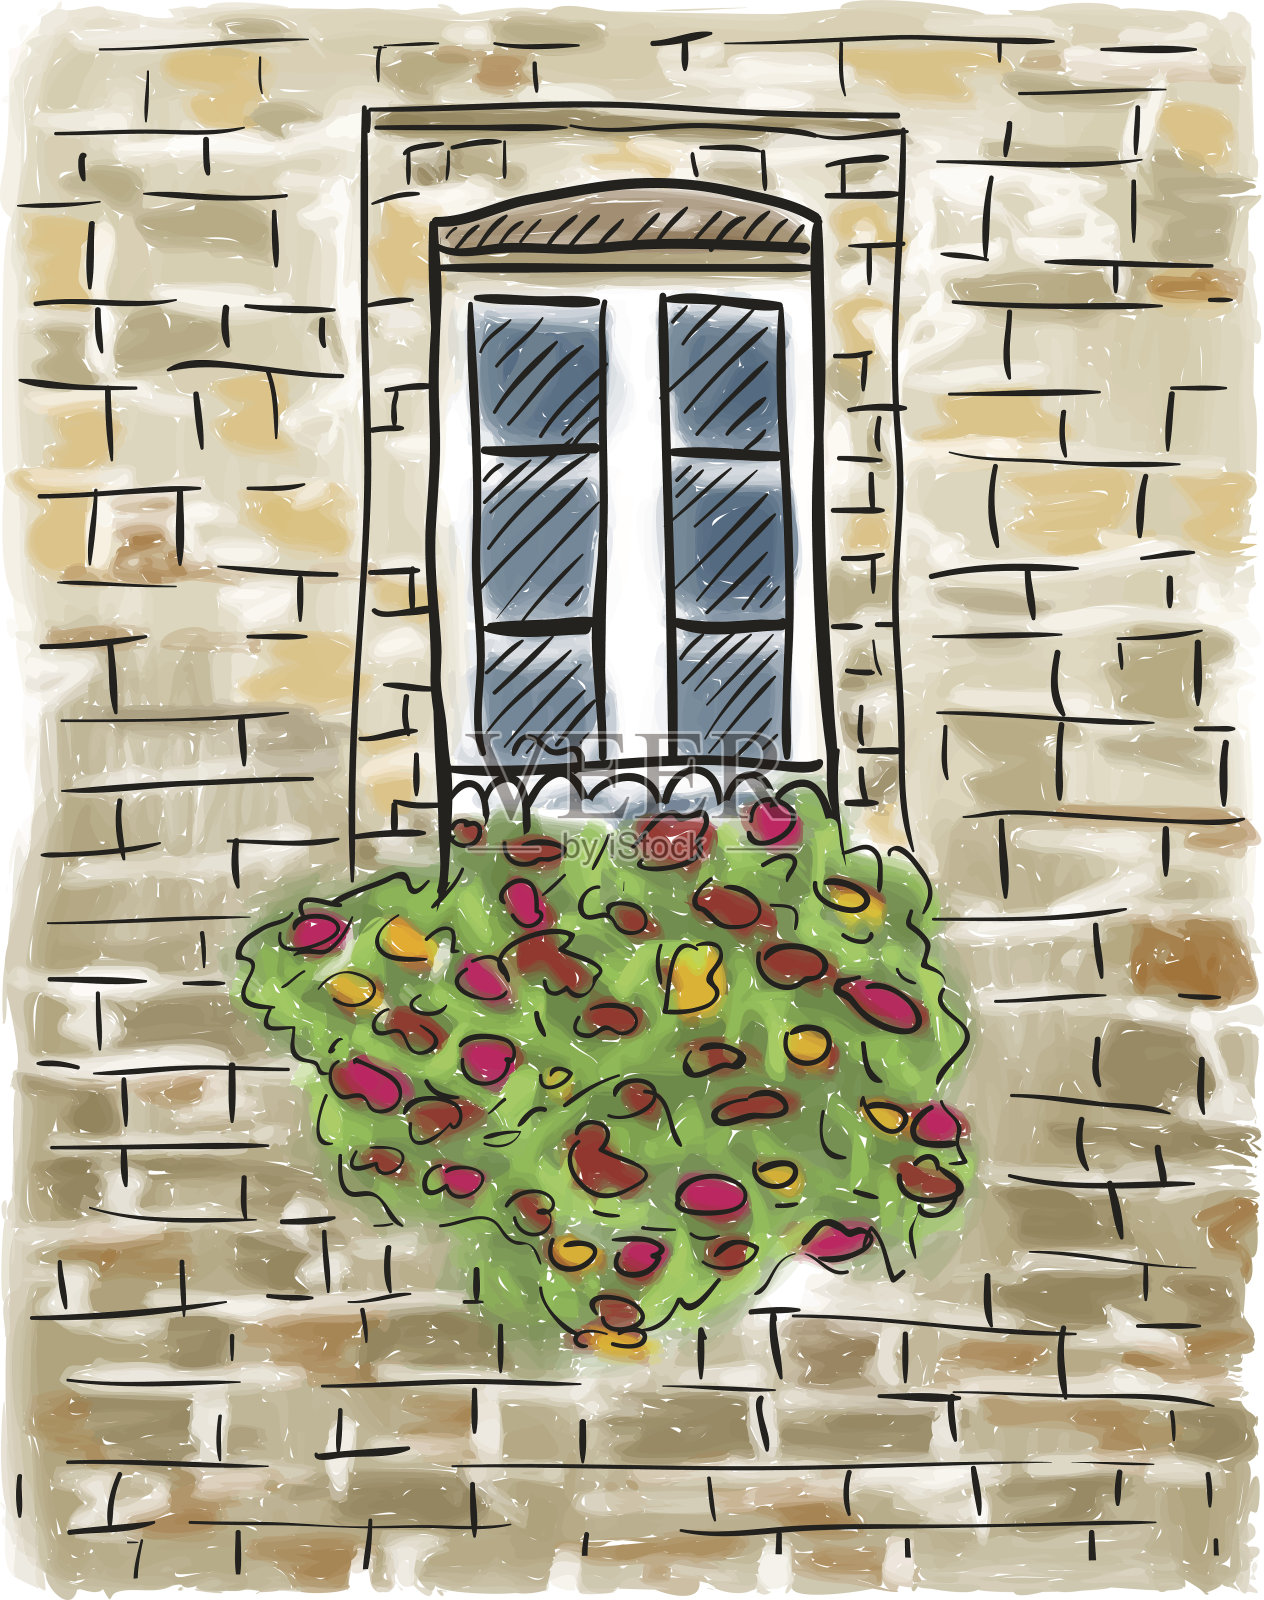 旧房子和窗户的油漆插画图片素材